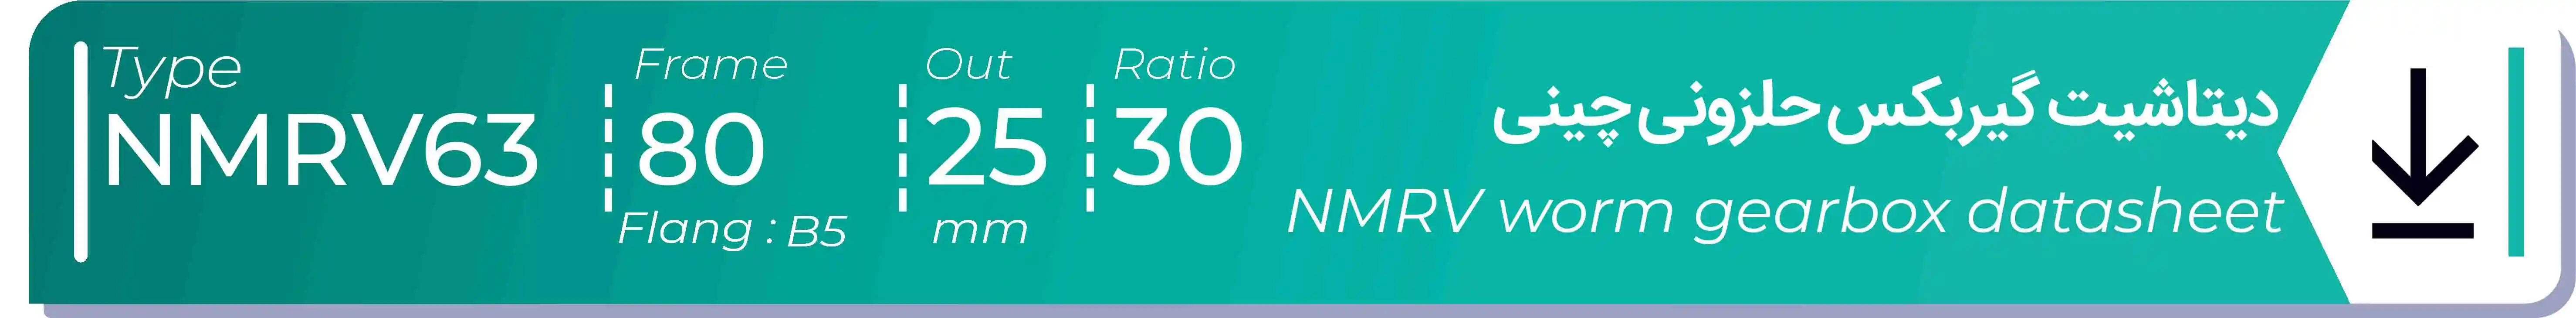  دیتاشیت و مشخصات فنی گیربکس حلزونی چینی   NMRV63  -  با خروجی 25- میلی متر و نسبت30 و فریم 80